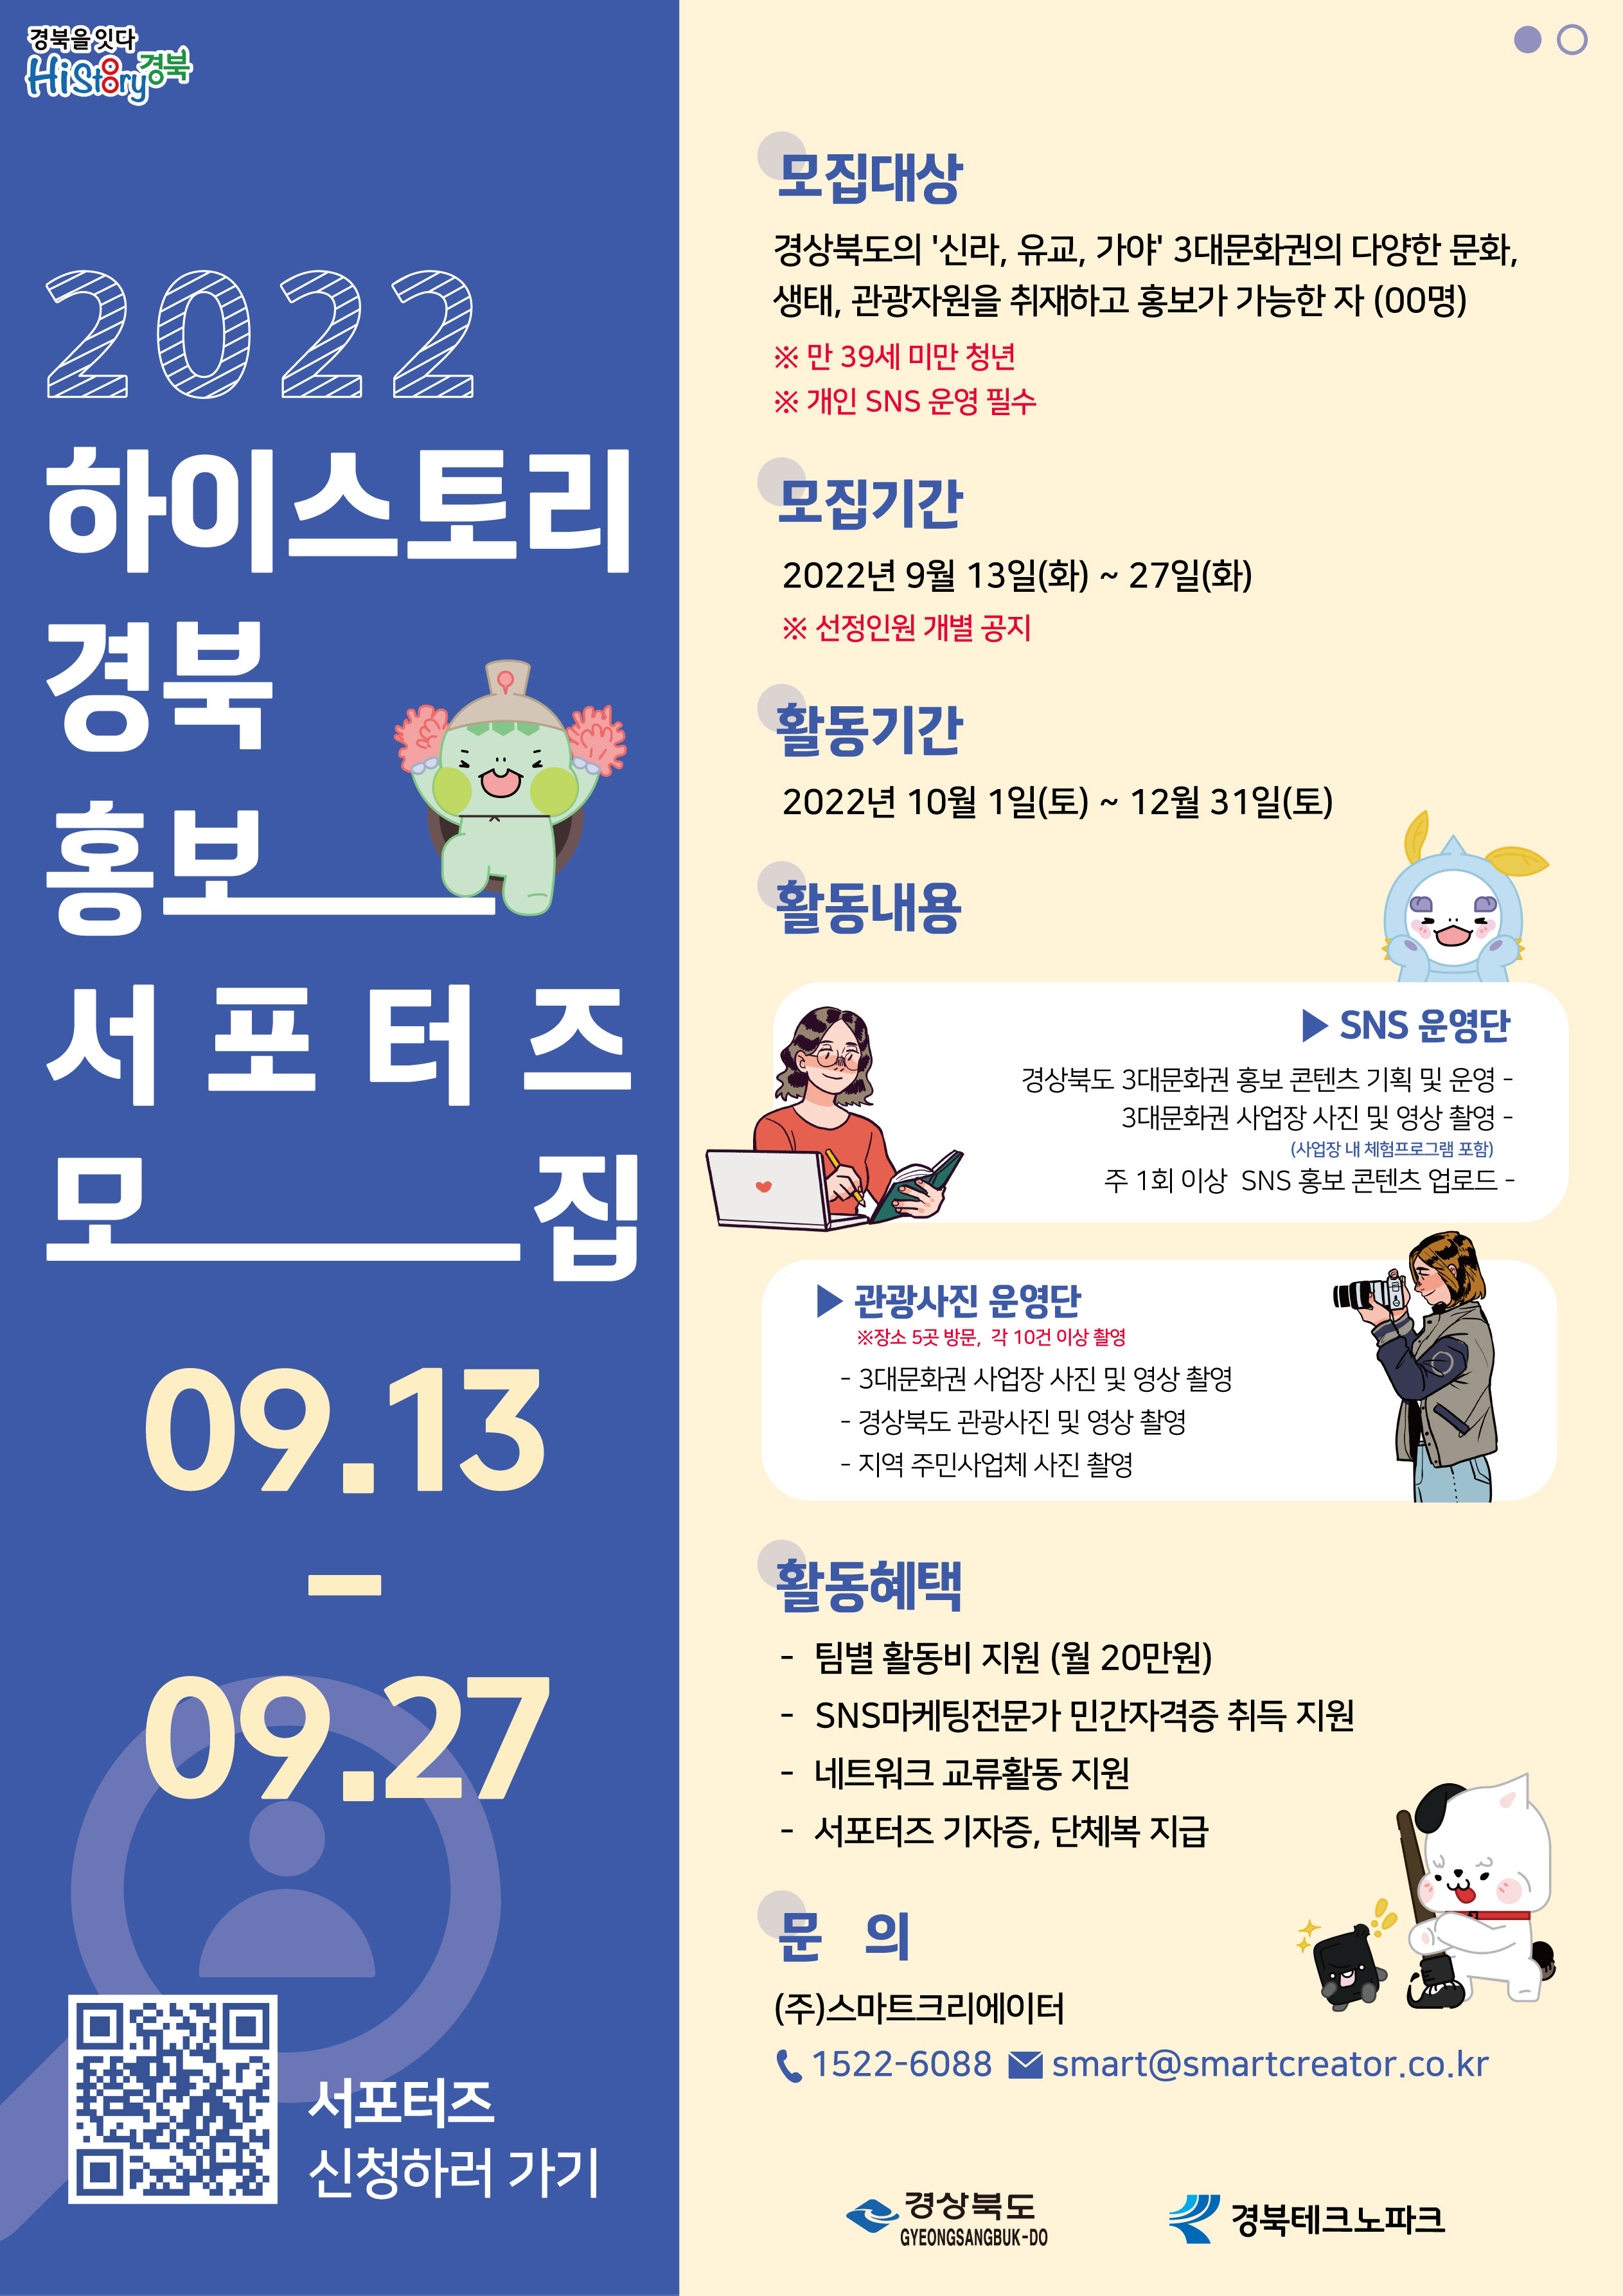 [스마트크리에이터] 2022 하이스토리 경북 홍보 서포터즈 모집